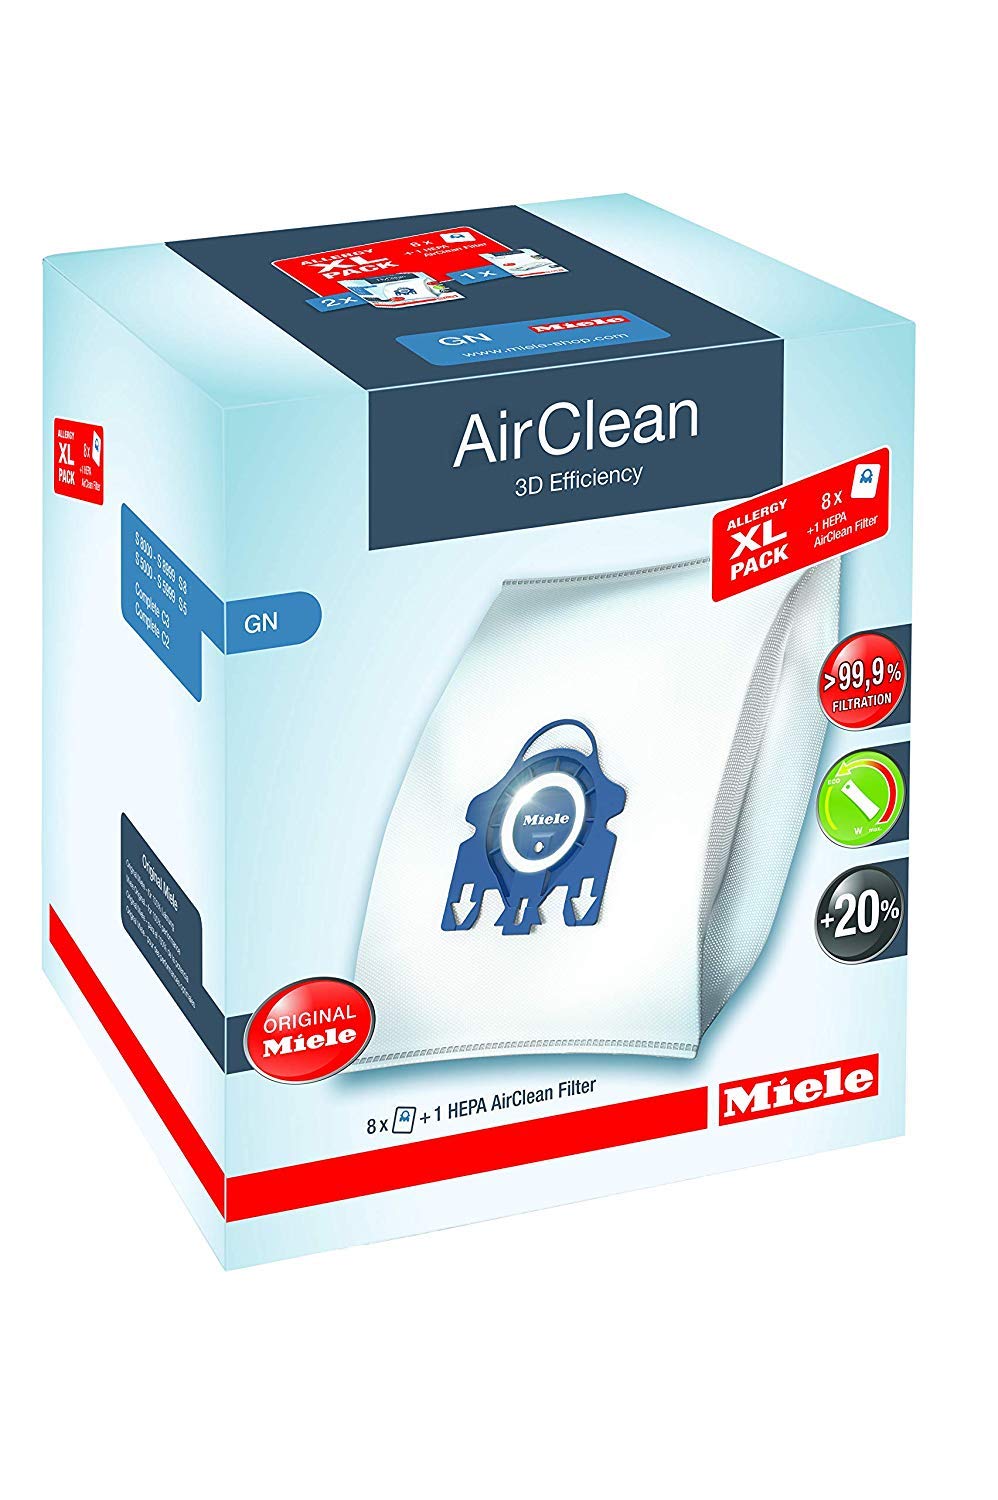 Miele AirClean 3D 高效集尘袋，GN 型，过敏 XL 装，8 个袋子，2 个电机前过滤器和 1 个 HEPA 过滤器